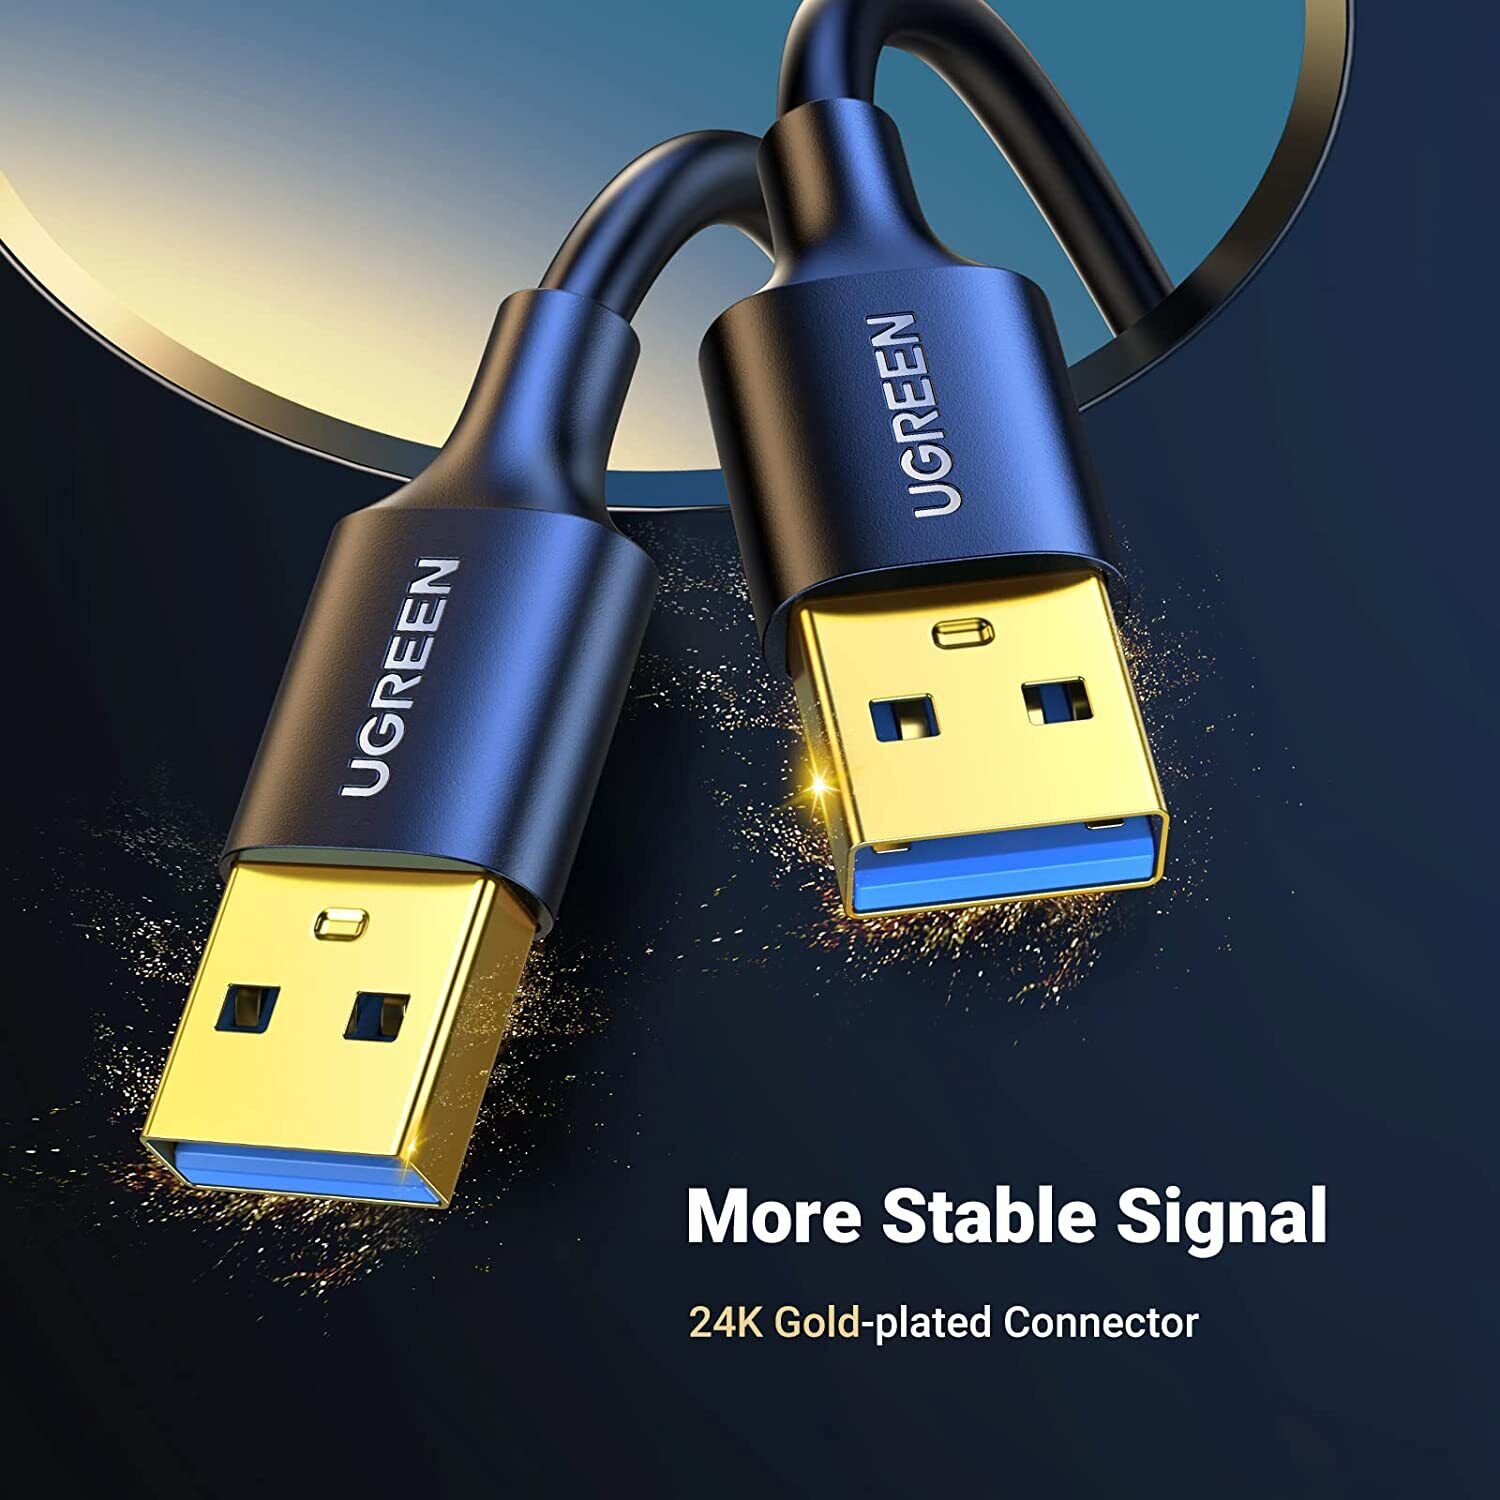 Dây - Cáp USB 3.0 nối hai đầu dương dương dài 0.5M chính hãng Ugreen 10369 cao cấp